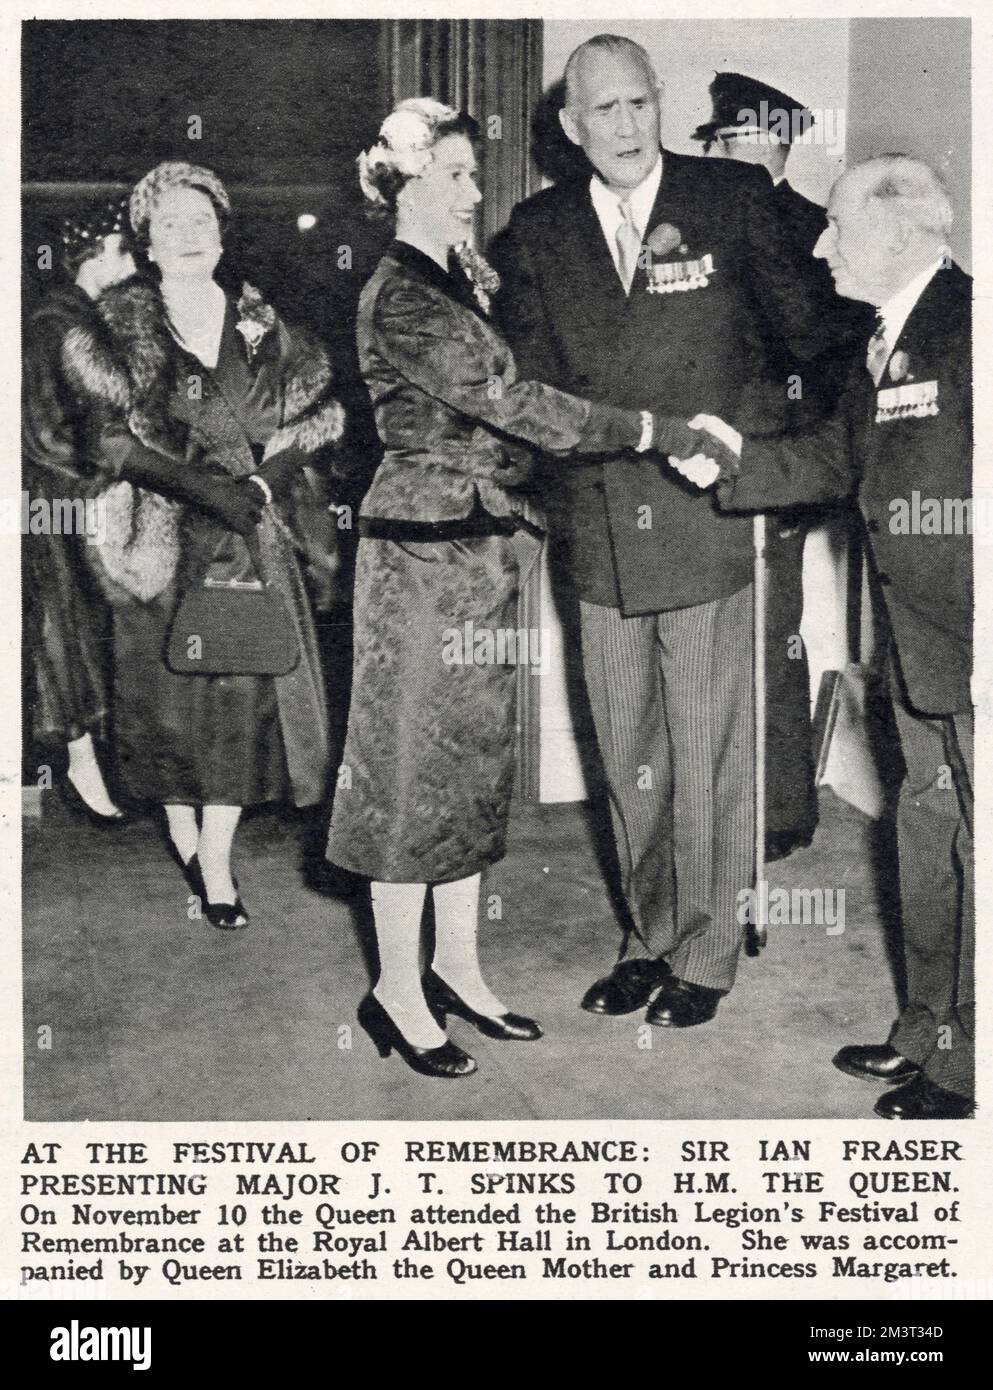 Il presidente della Legione britannica Sir Ian Fraser presenta J T Spinks alla Regina Elisabetta II, accompagnato da Elisabetta, la Regina Madre al Festival della memoria della Legione, tenutosi presso la Royal Albert Hall. Foto Stock